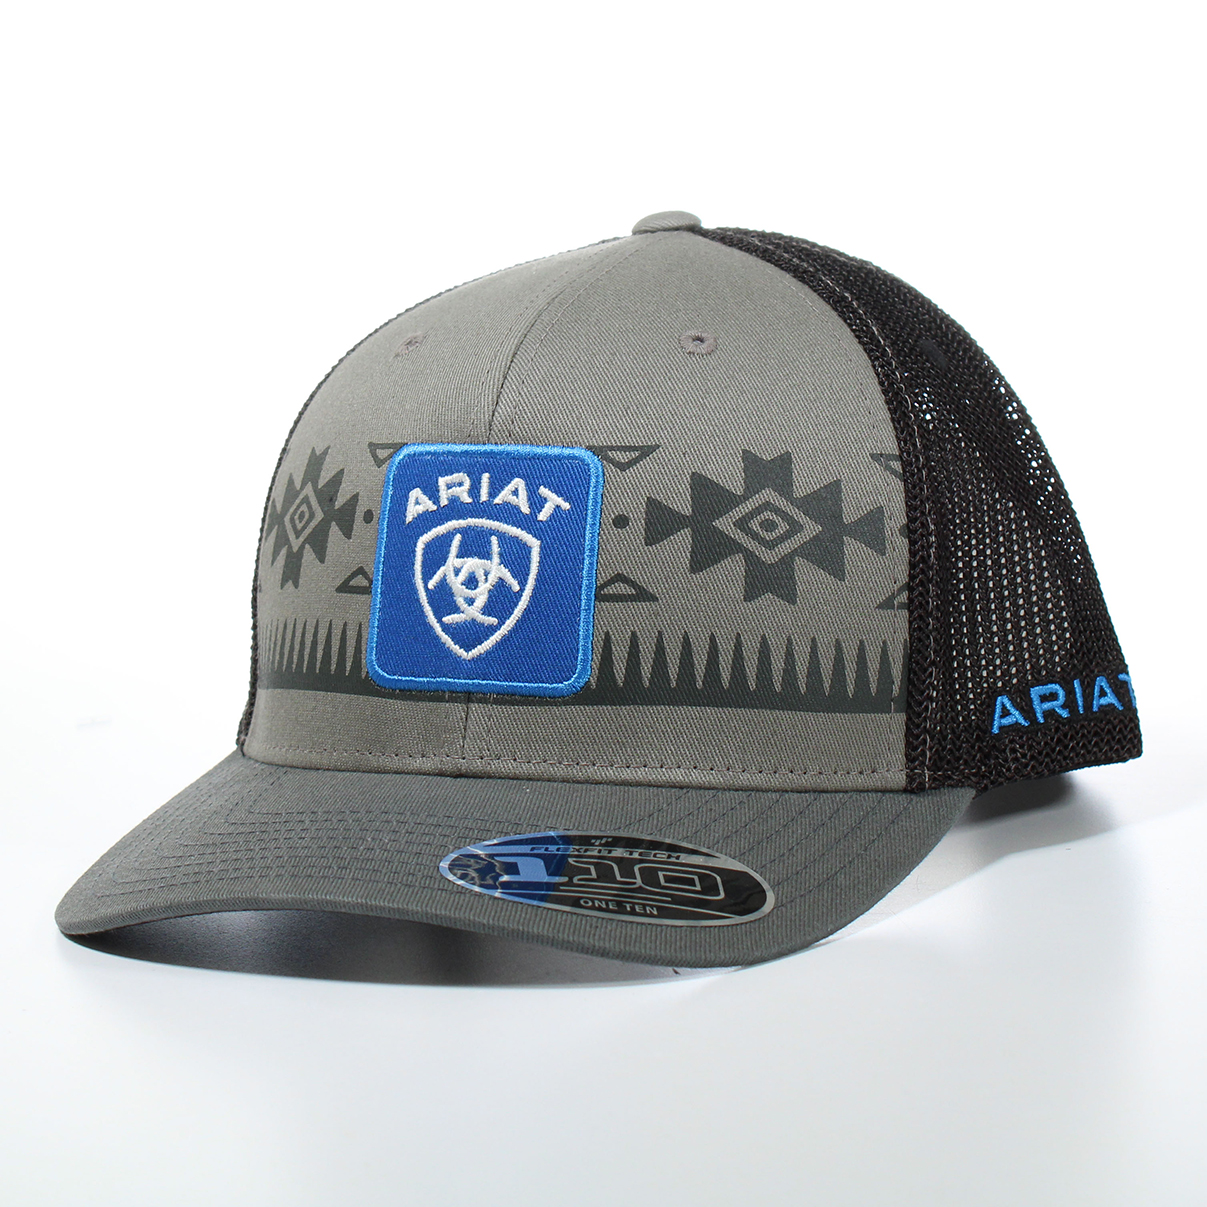 Ariat Men's Flexfit 110 Snapback Cap - Grey w/Southweatern Shield